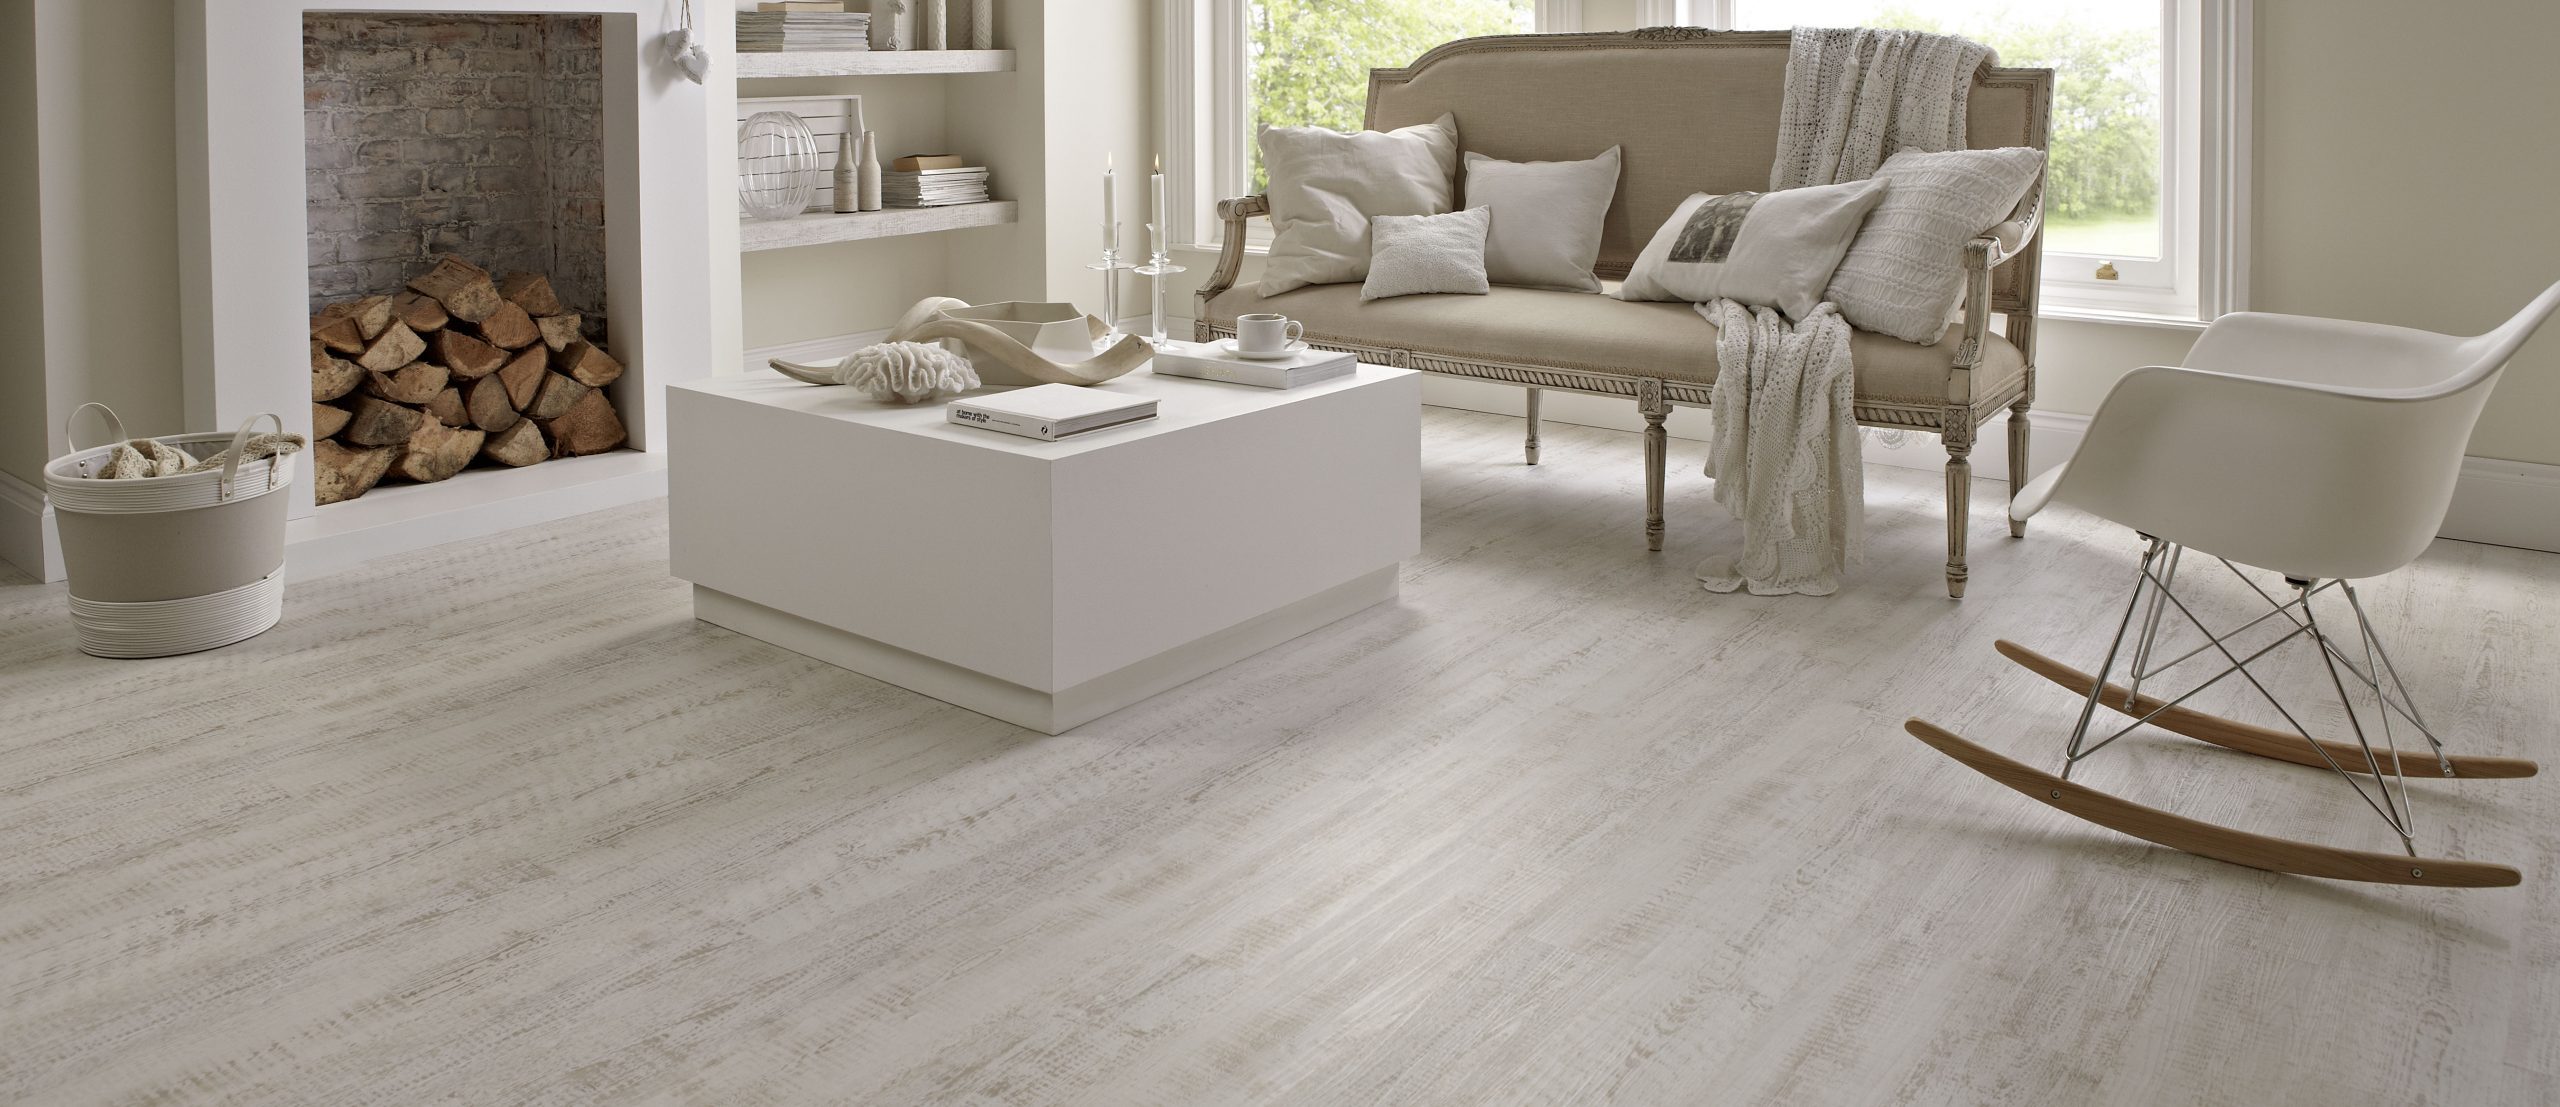 white-wood-flooring-living-room|white-flooring|white-wood-flooring-kids-room|white-wood-flooring-kitchen